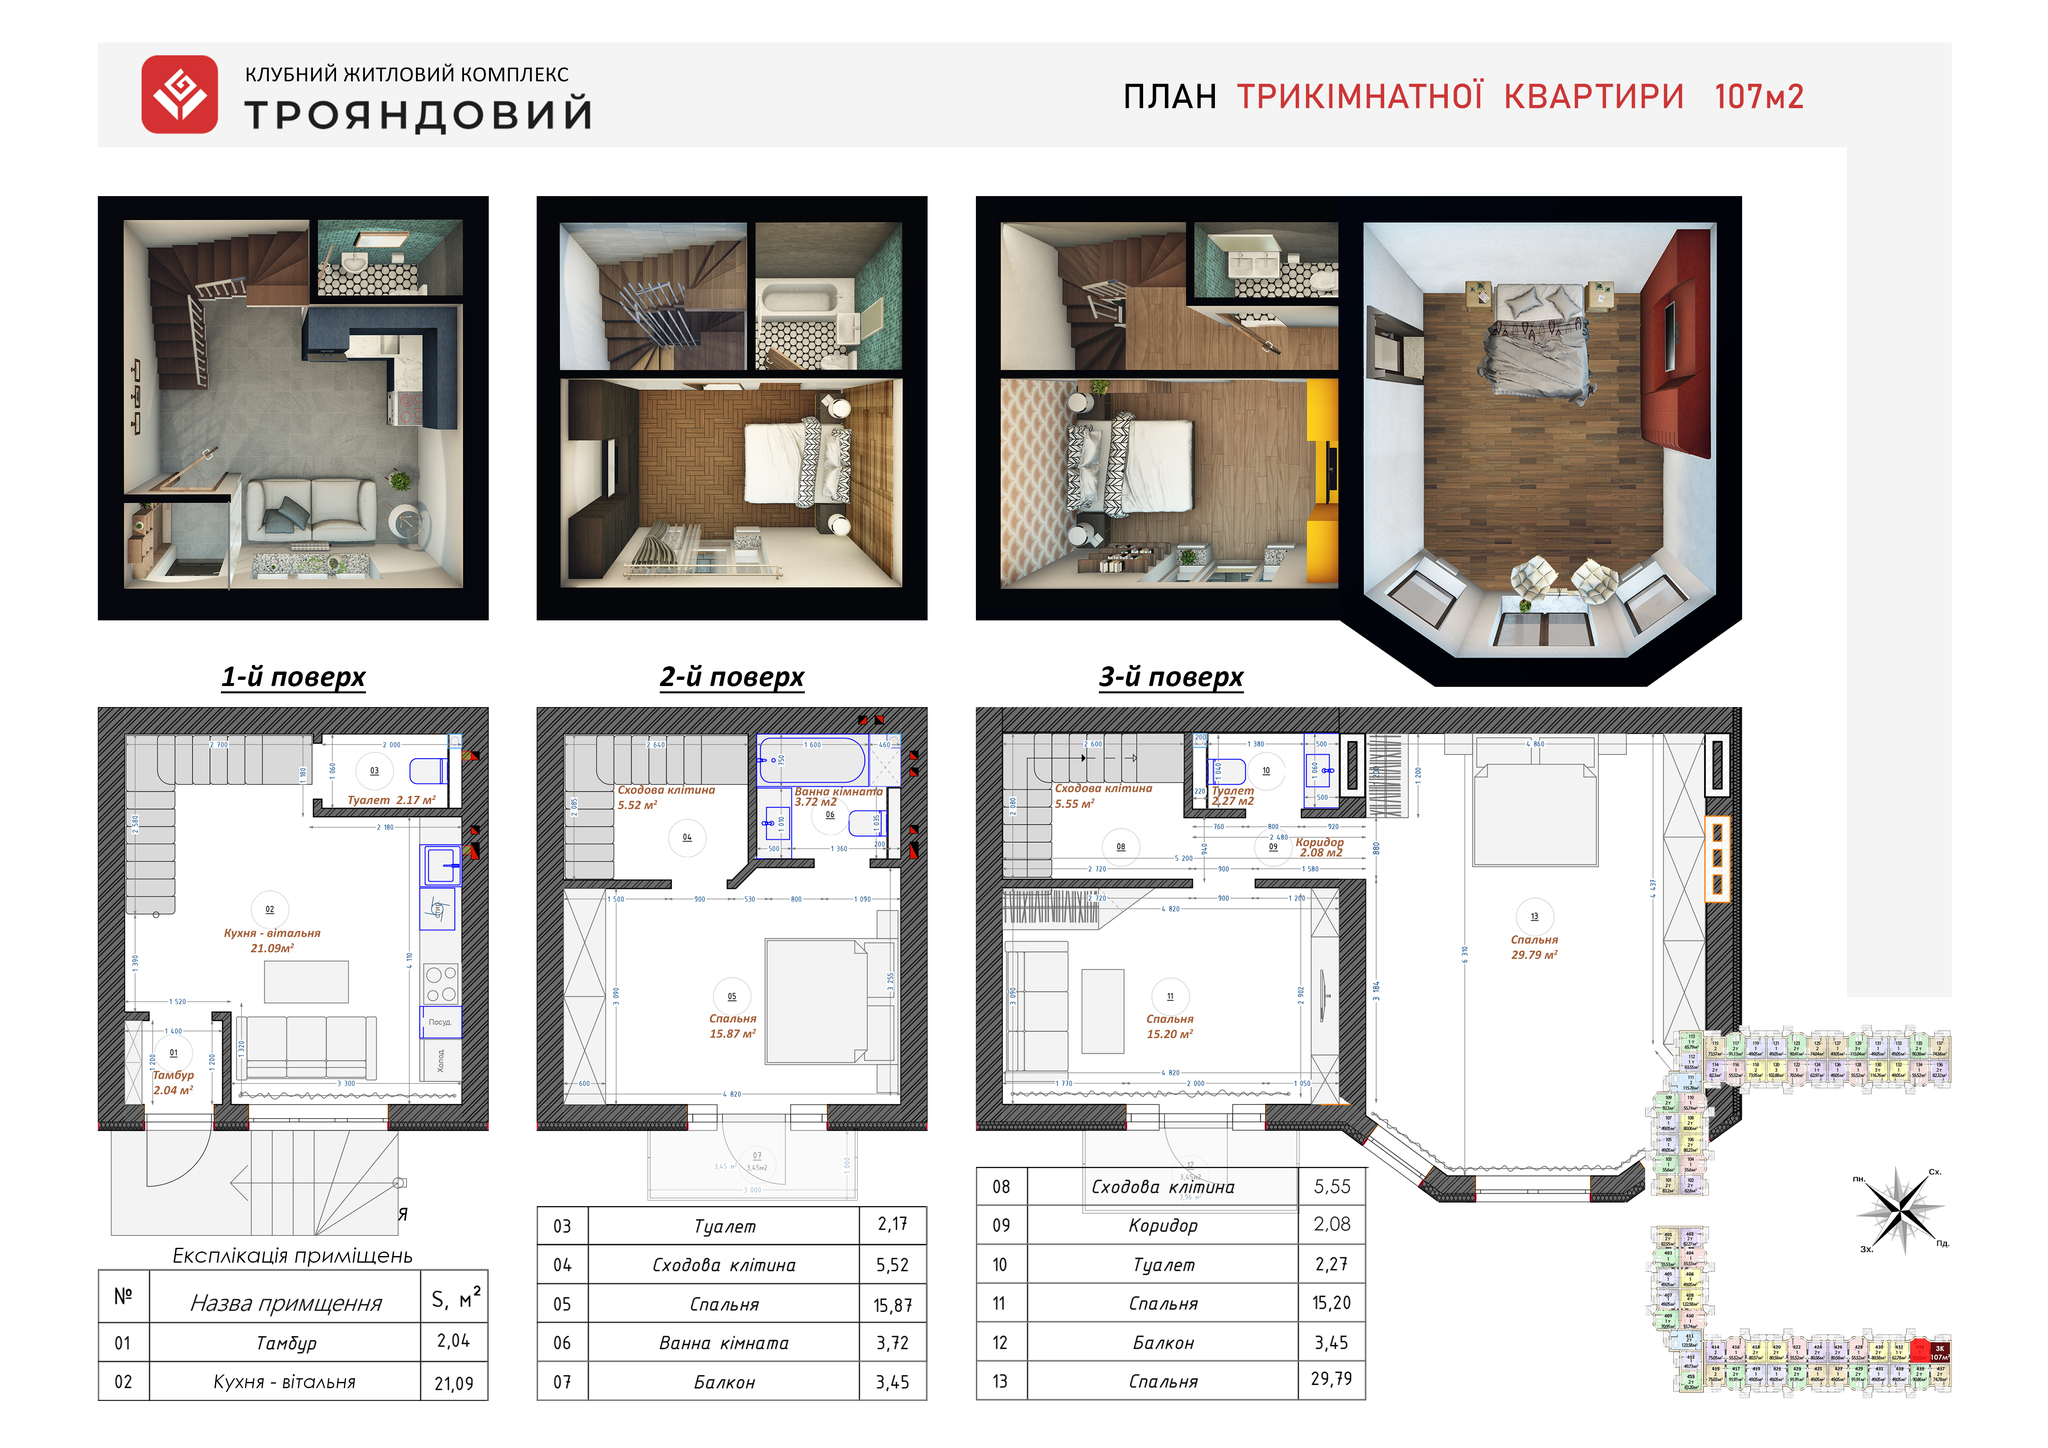 3-кімнатна 107 м² в ЖК Трояндовий від 28 000 грн/м², м. Бровари